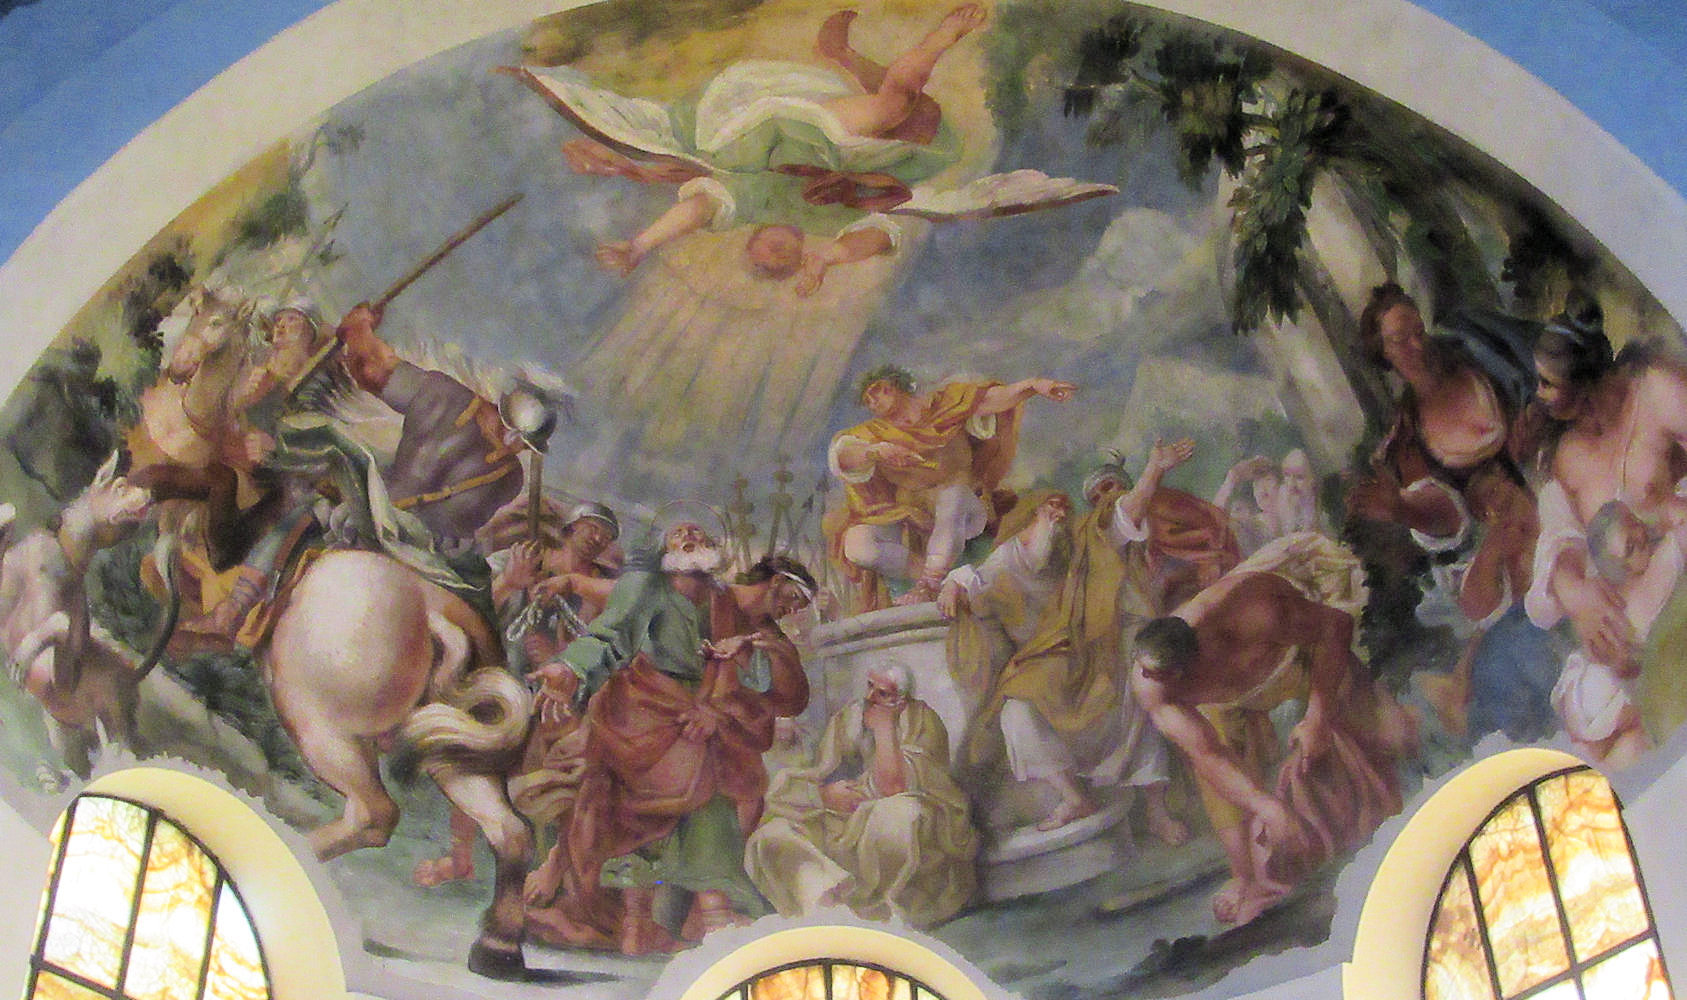 Cavalier d'Arpino: Johannes entsteigt dem Ölkessel, Apsisfresko, um 1600, in der Kirche San Giovanni a Porta Latina in Rom